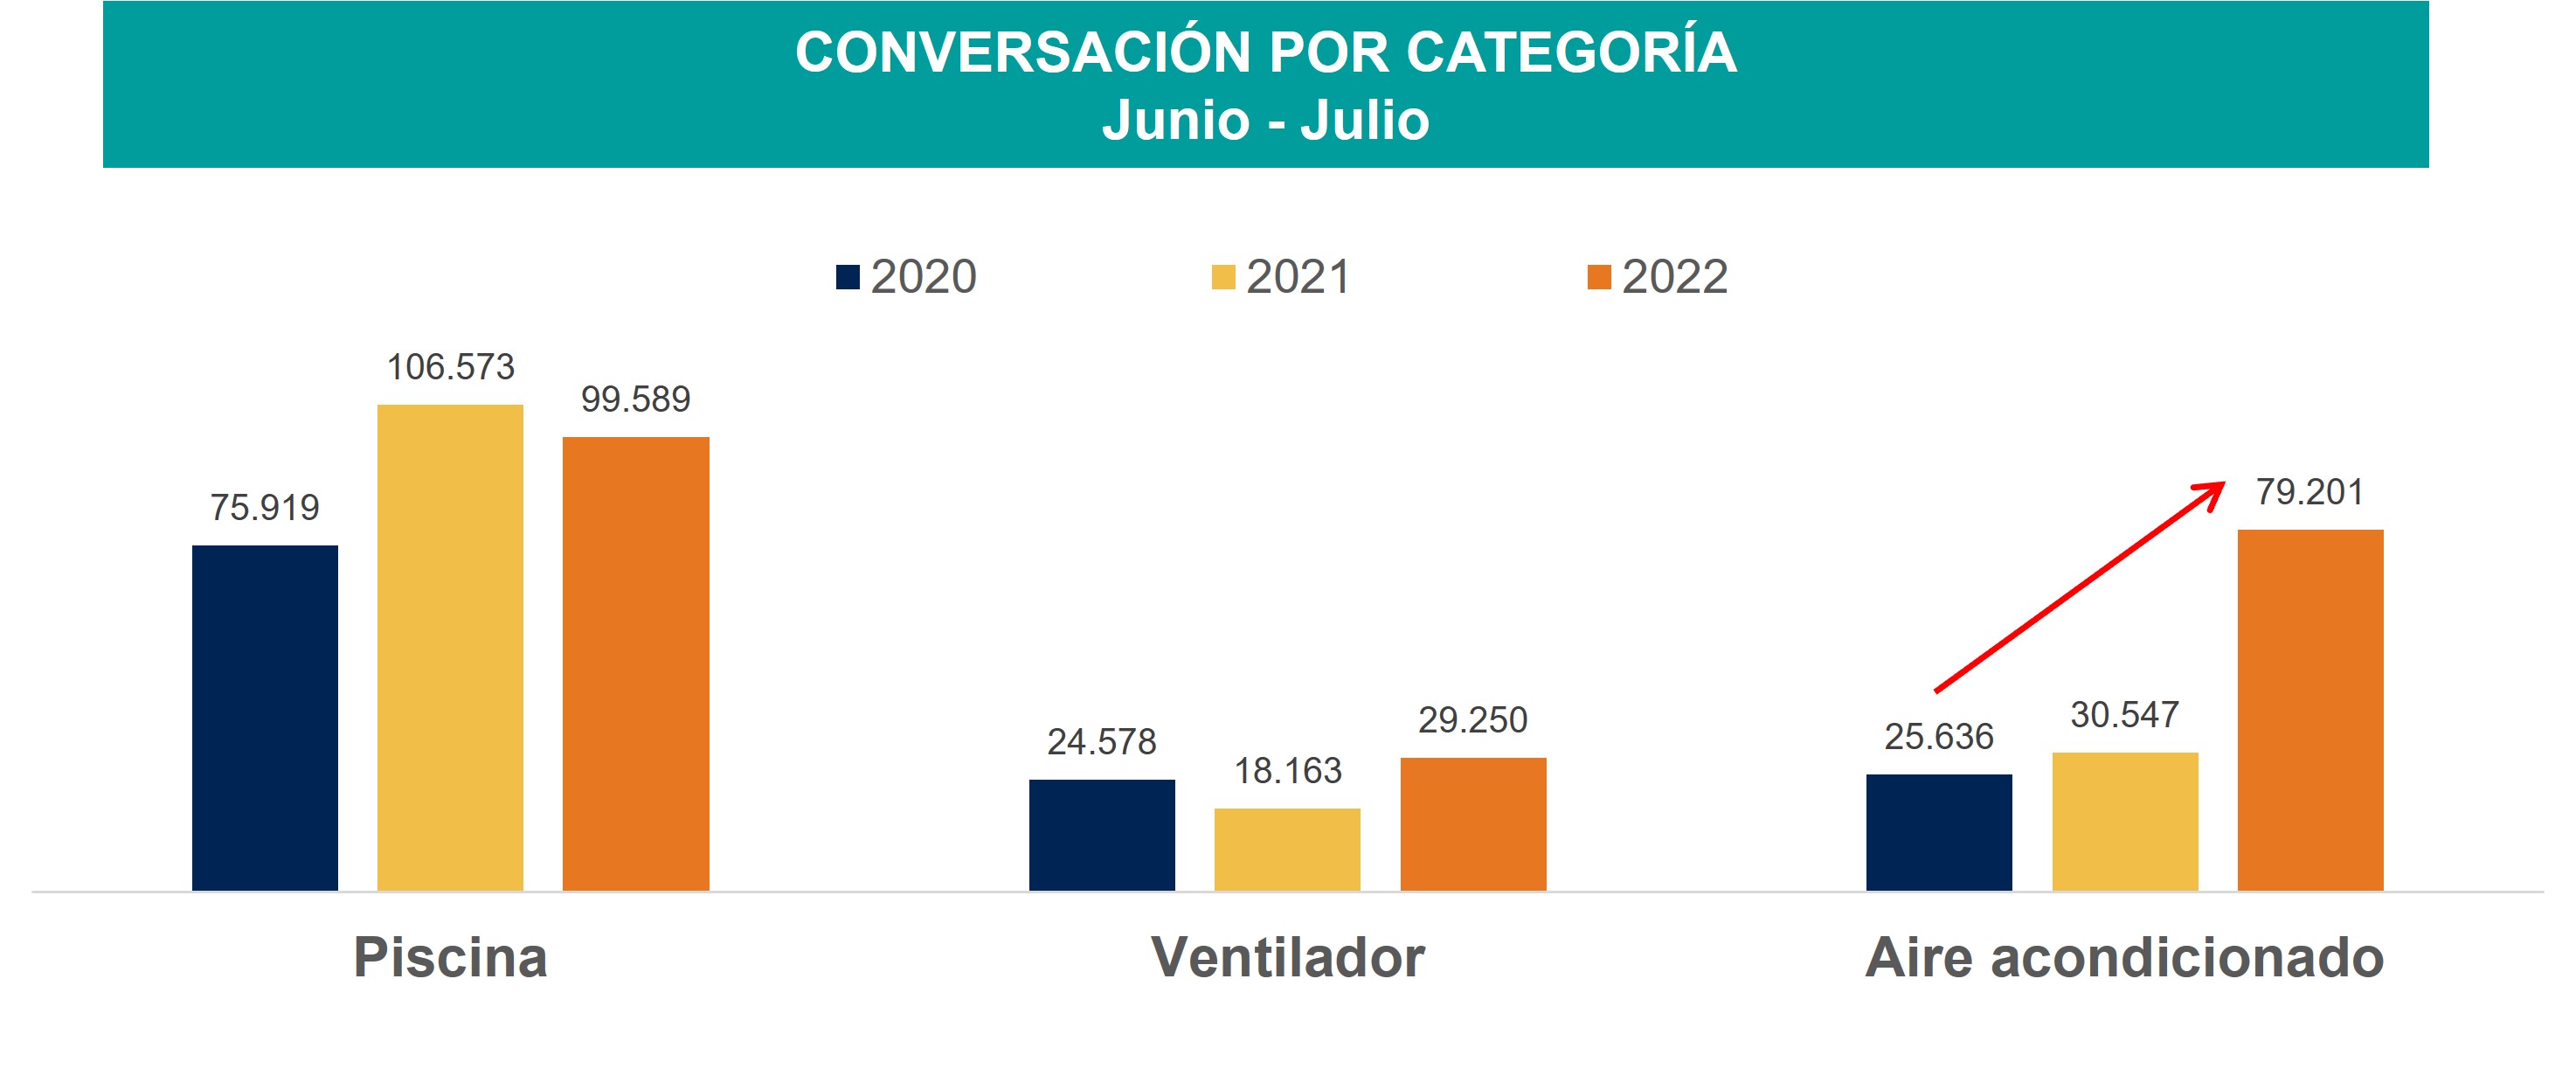 Conversacion_AireAcondicionado_Ipsos_2022